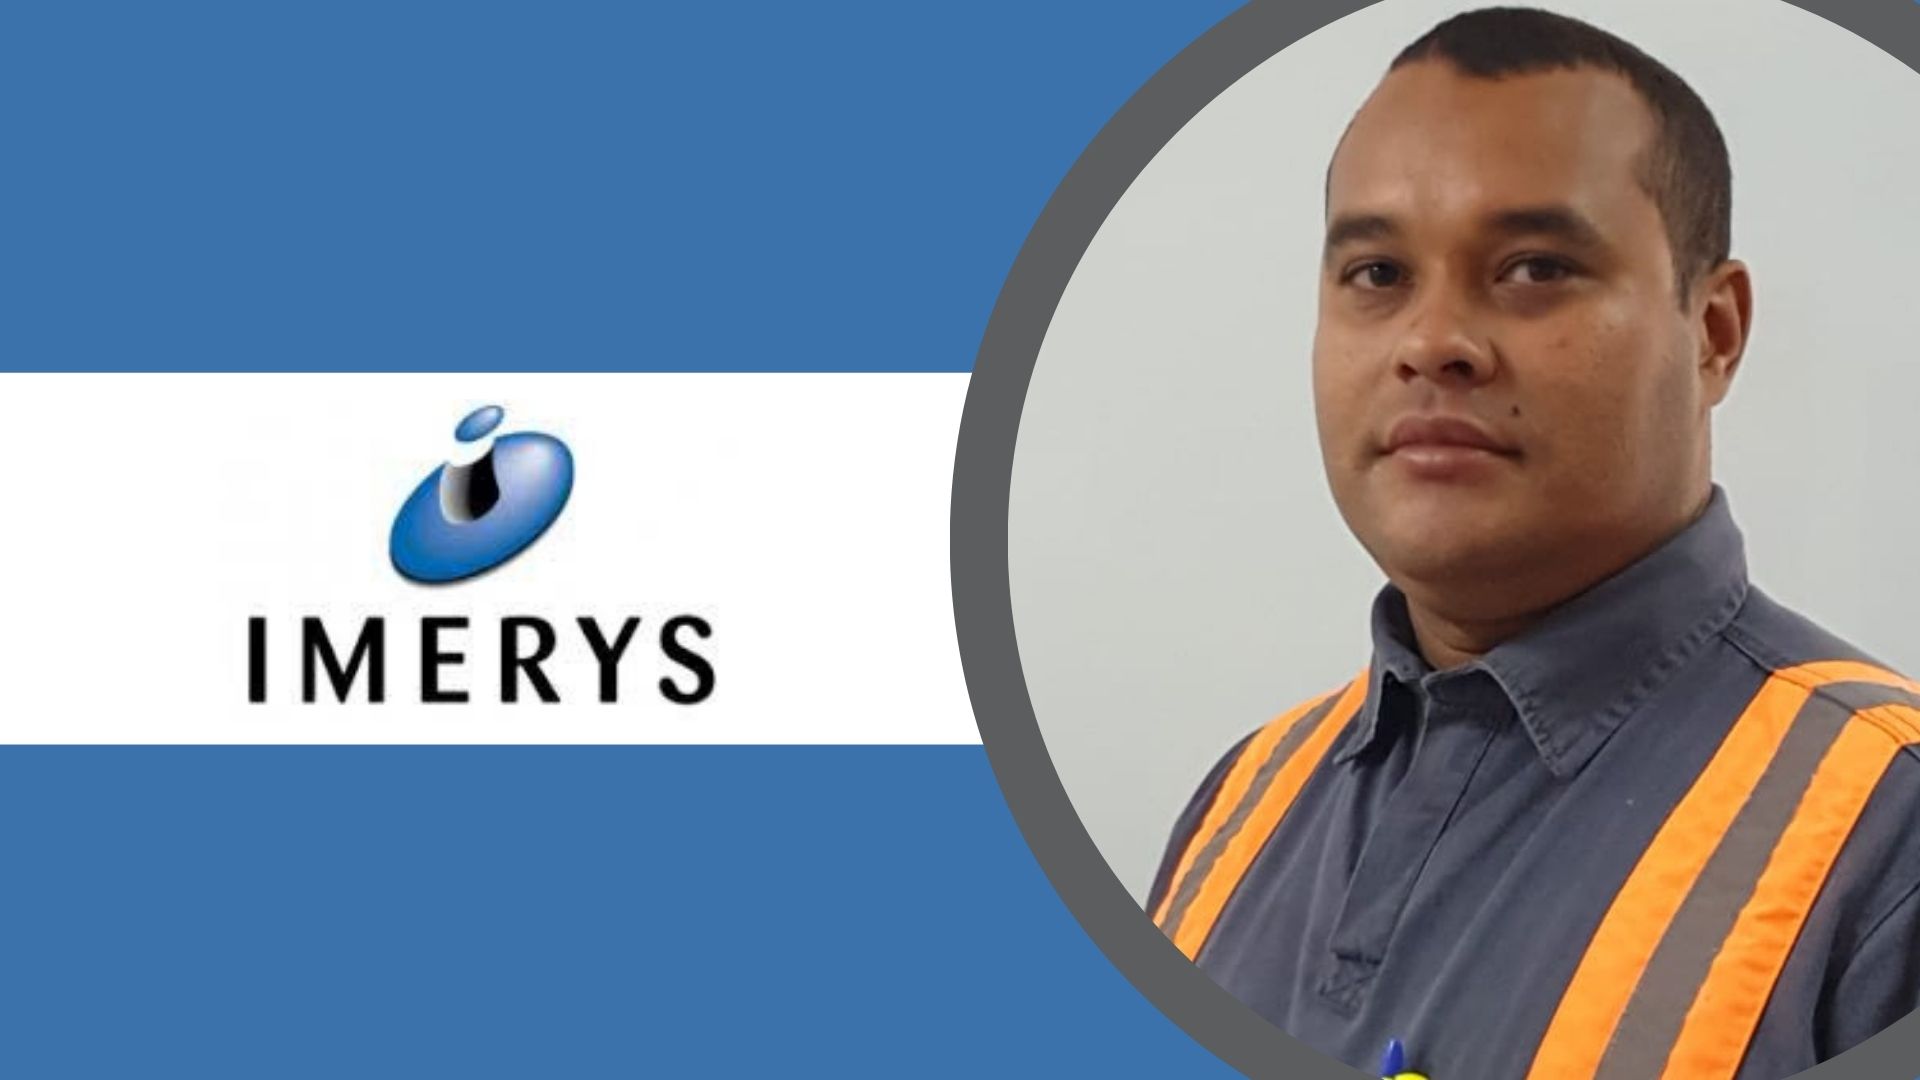 Josimar Ramos, Supervisor de Manutenção Mecânica da Imerys, concorre na premiação com o projeto “Desenvolvimento de tecnologia para aumento da eficiência dos aeroclassificadores em planta de carbonato de cálcio”.